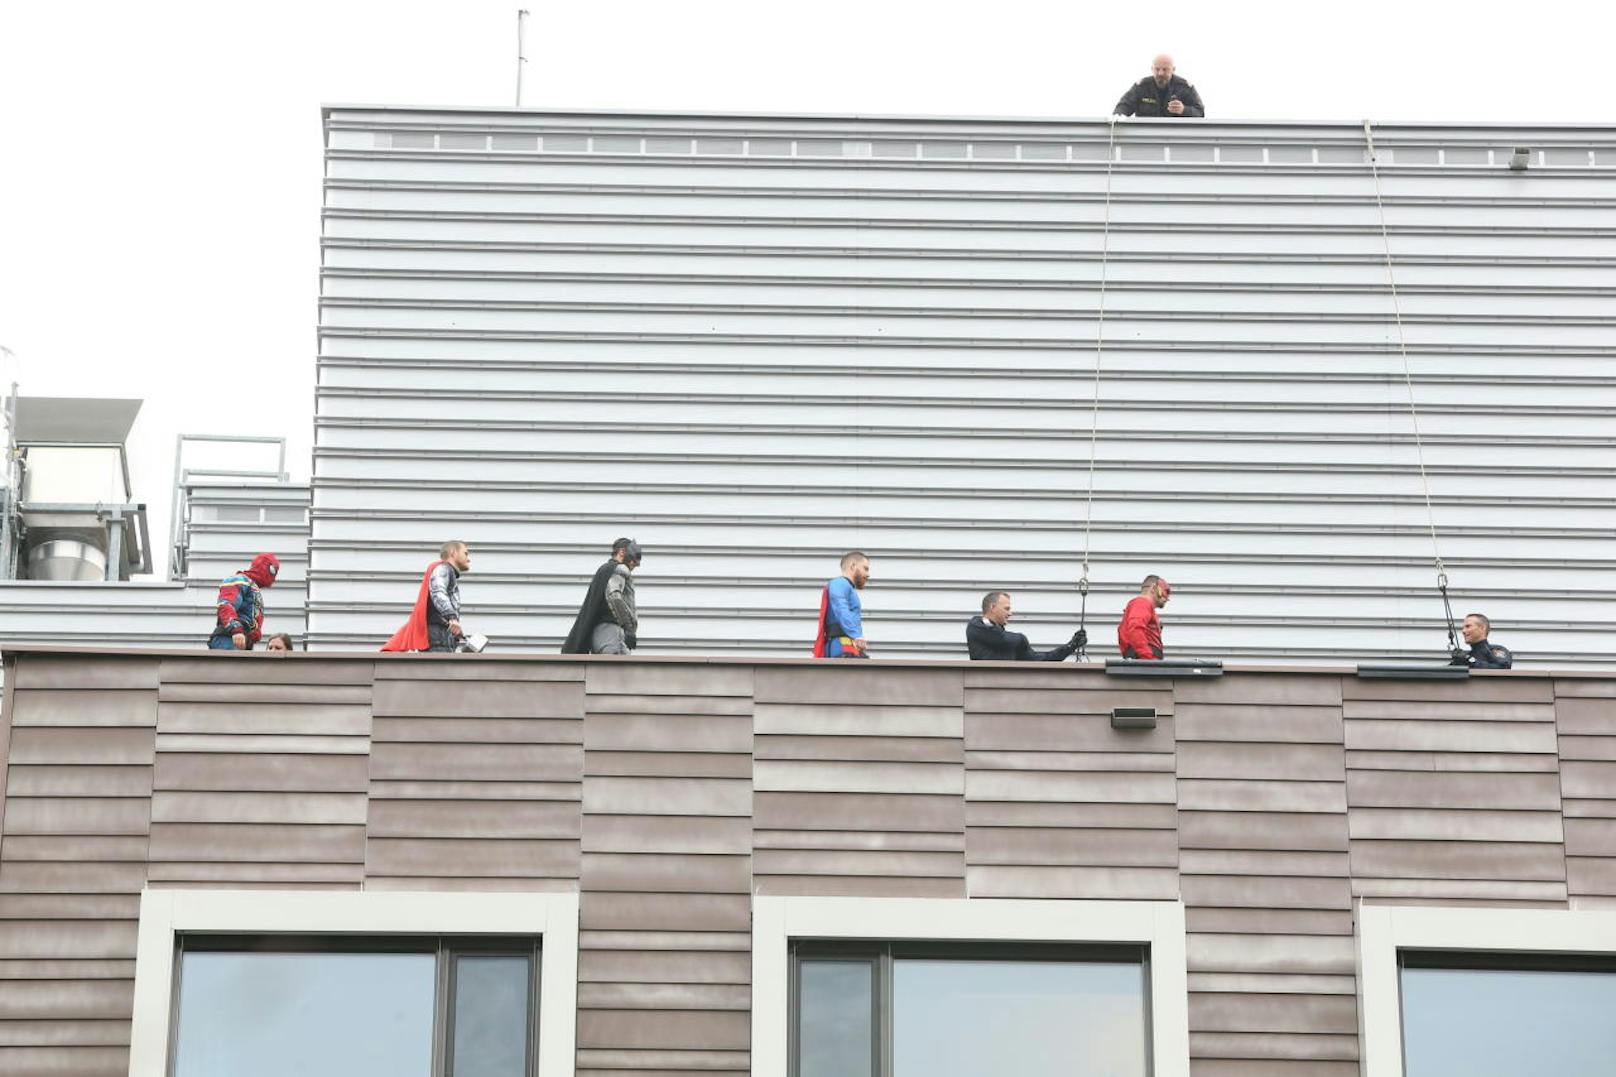 Aufmarsch der Helden: (v.l.n.r.) Spider-Man, Thor, Batman, Superman, Flash beziehen auf dem Dach des Spitals ihre Positionen. Von hier aus seilen sich die Wega-Beamten entlang der Fassade und vorbei an den wartenden Kindern ab.